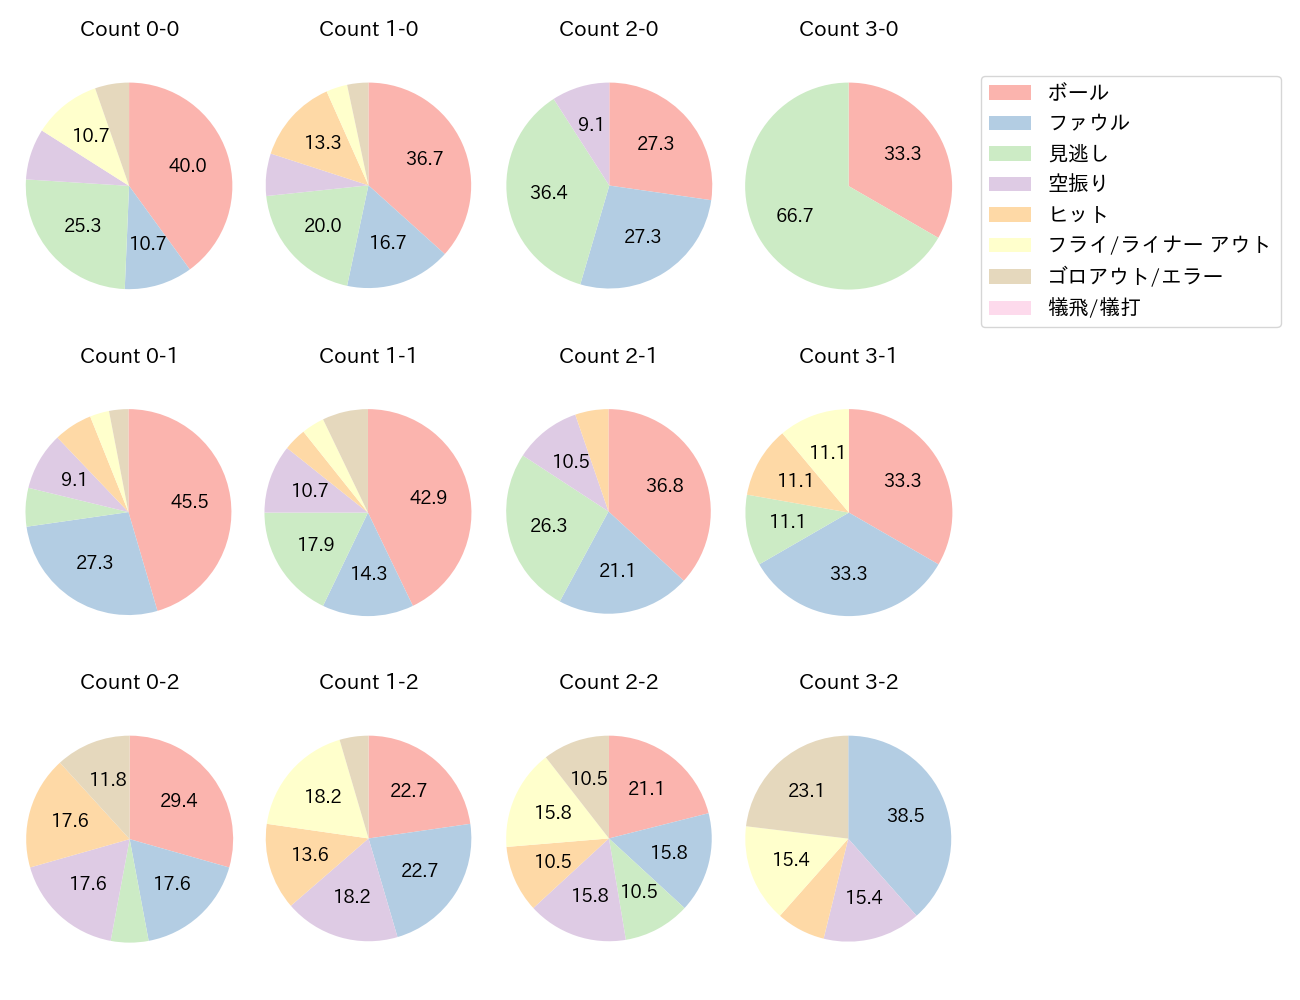 濱田 太貴の球数分布(2023年4月)